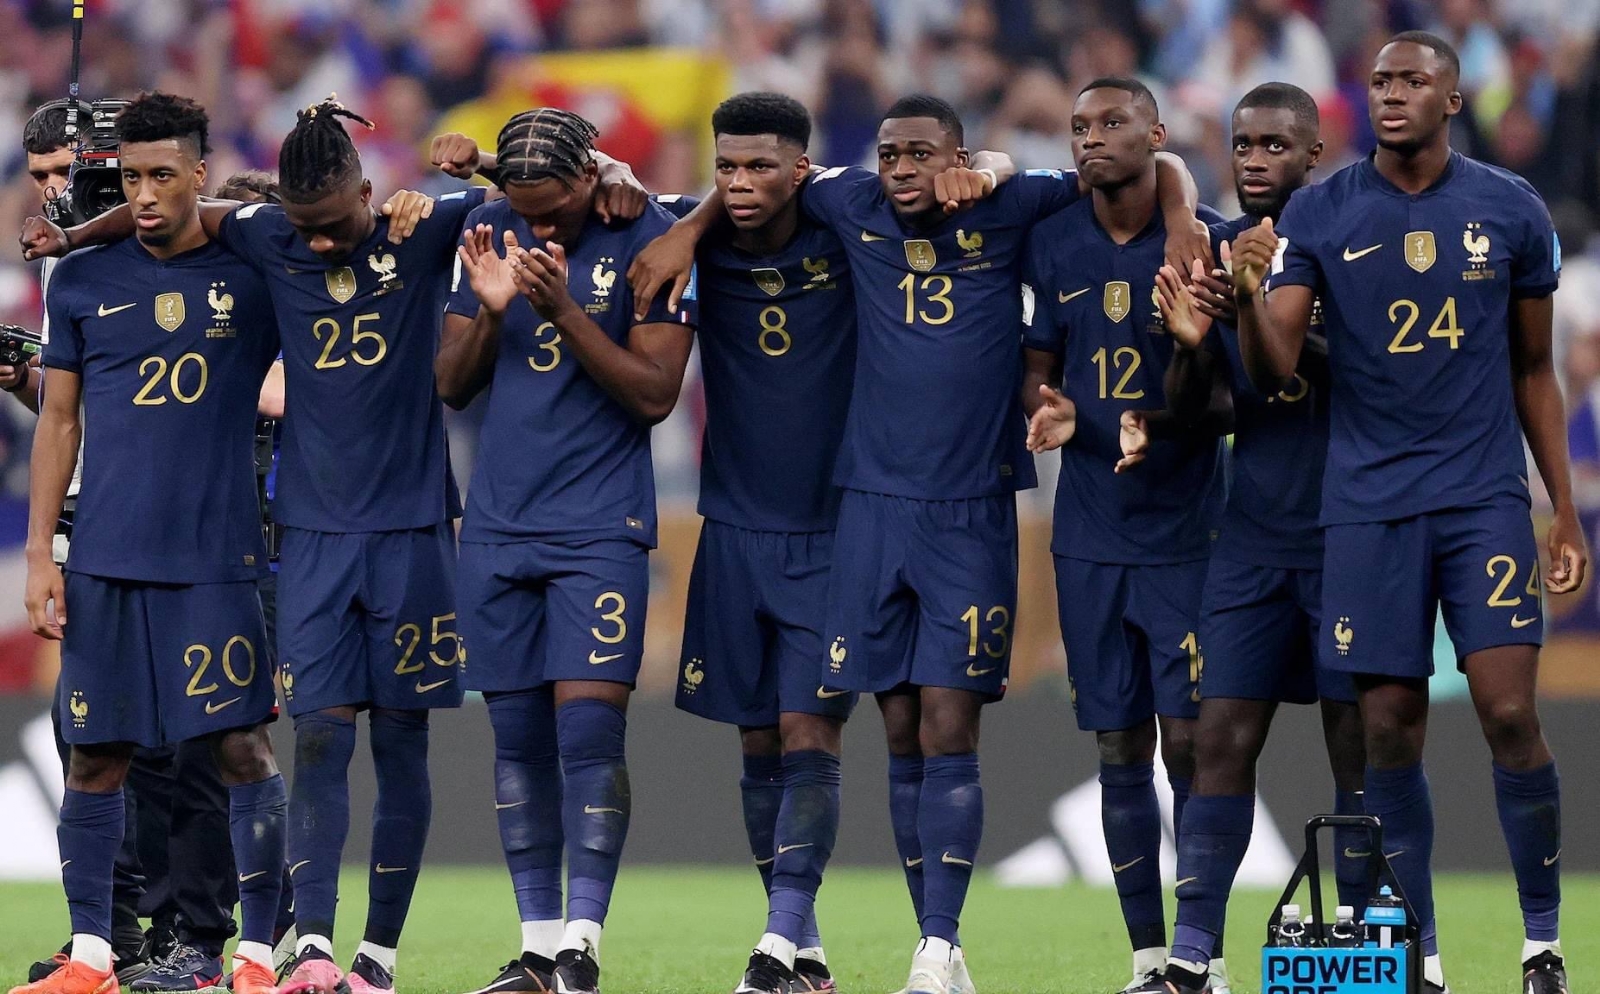 Franceses llegaron tristes y decepcionados tras perder el Mundial de Qatar 2022